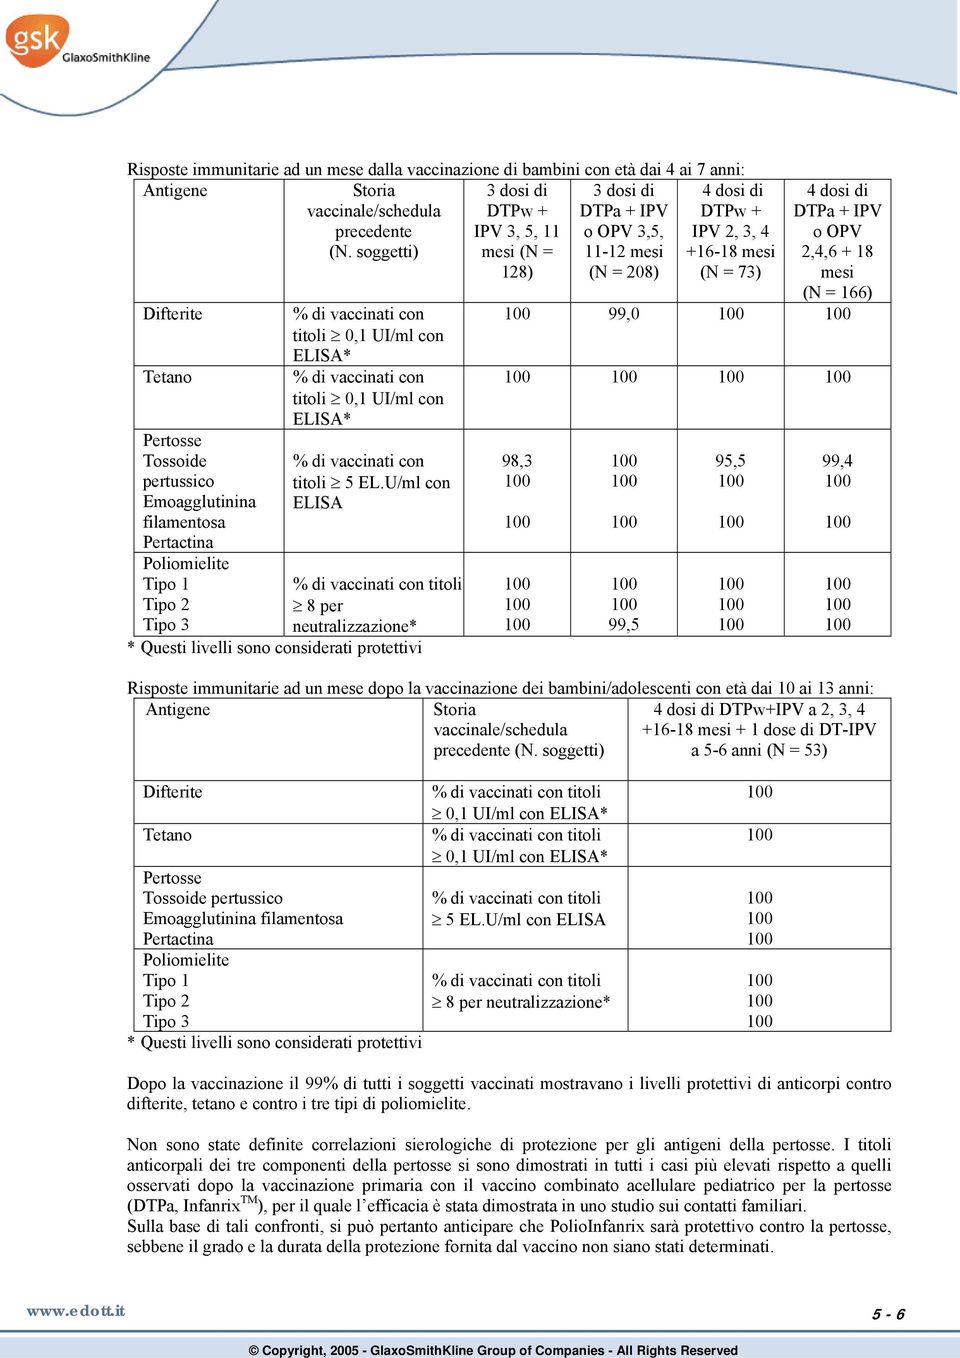 pertussico Emoagglutinina filamentosa Pertactina Poliomielite Tipo 1 Tipo 2 Tipo 3 % di vaccinati con titoli 0,1 UI/ml con ELISA* % di vaccinati con titoli 0,1 UI/ml con ELISA* % di vaccinati con